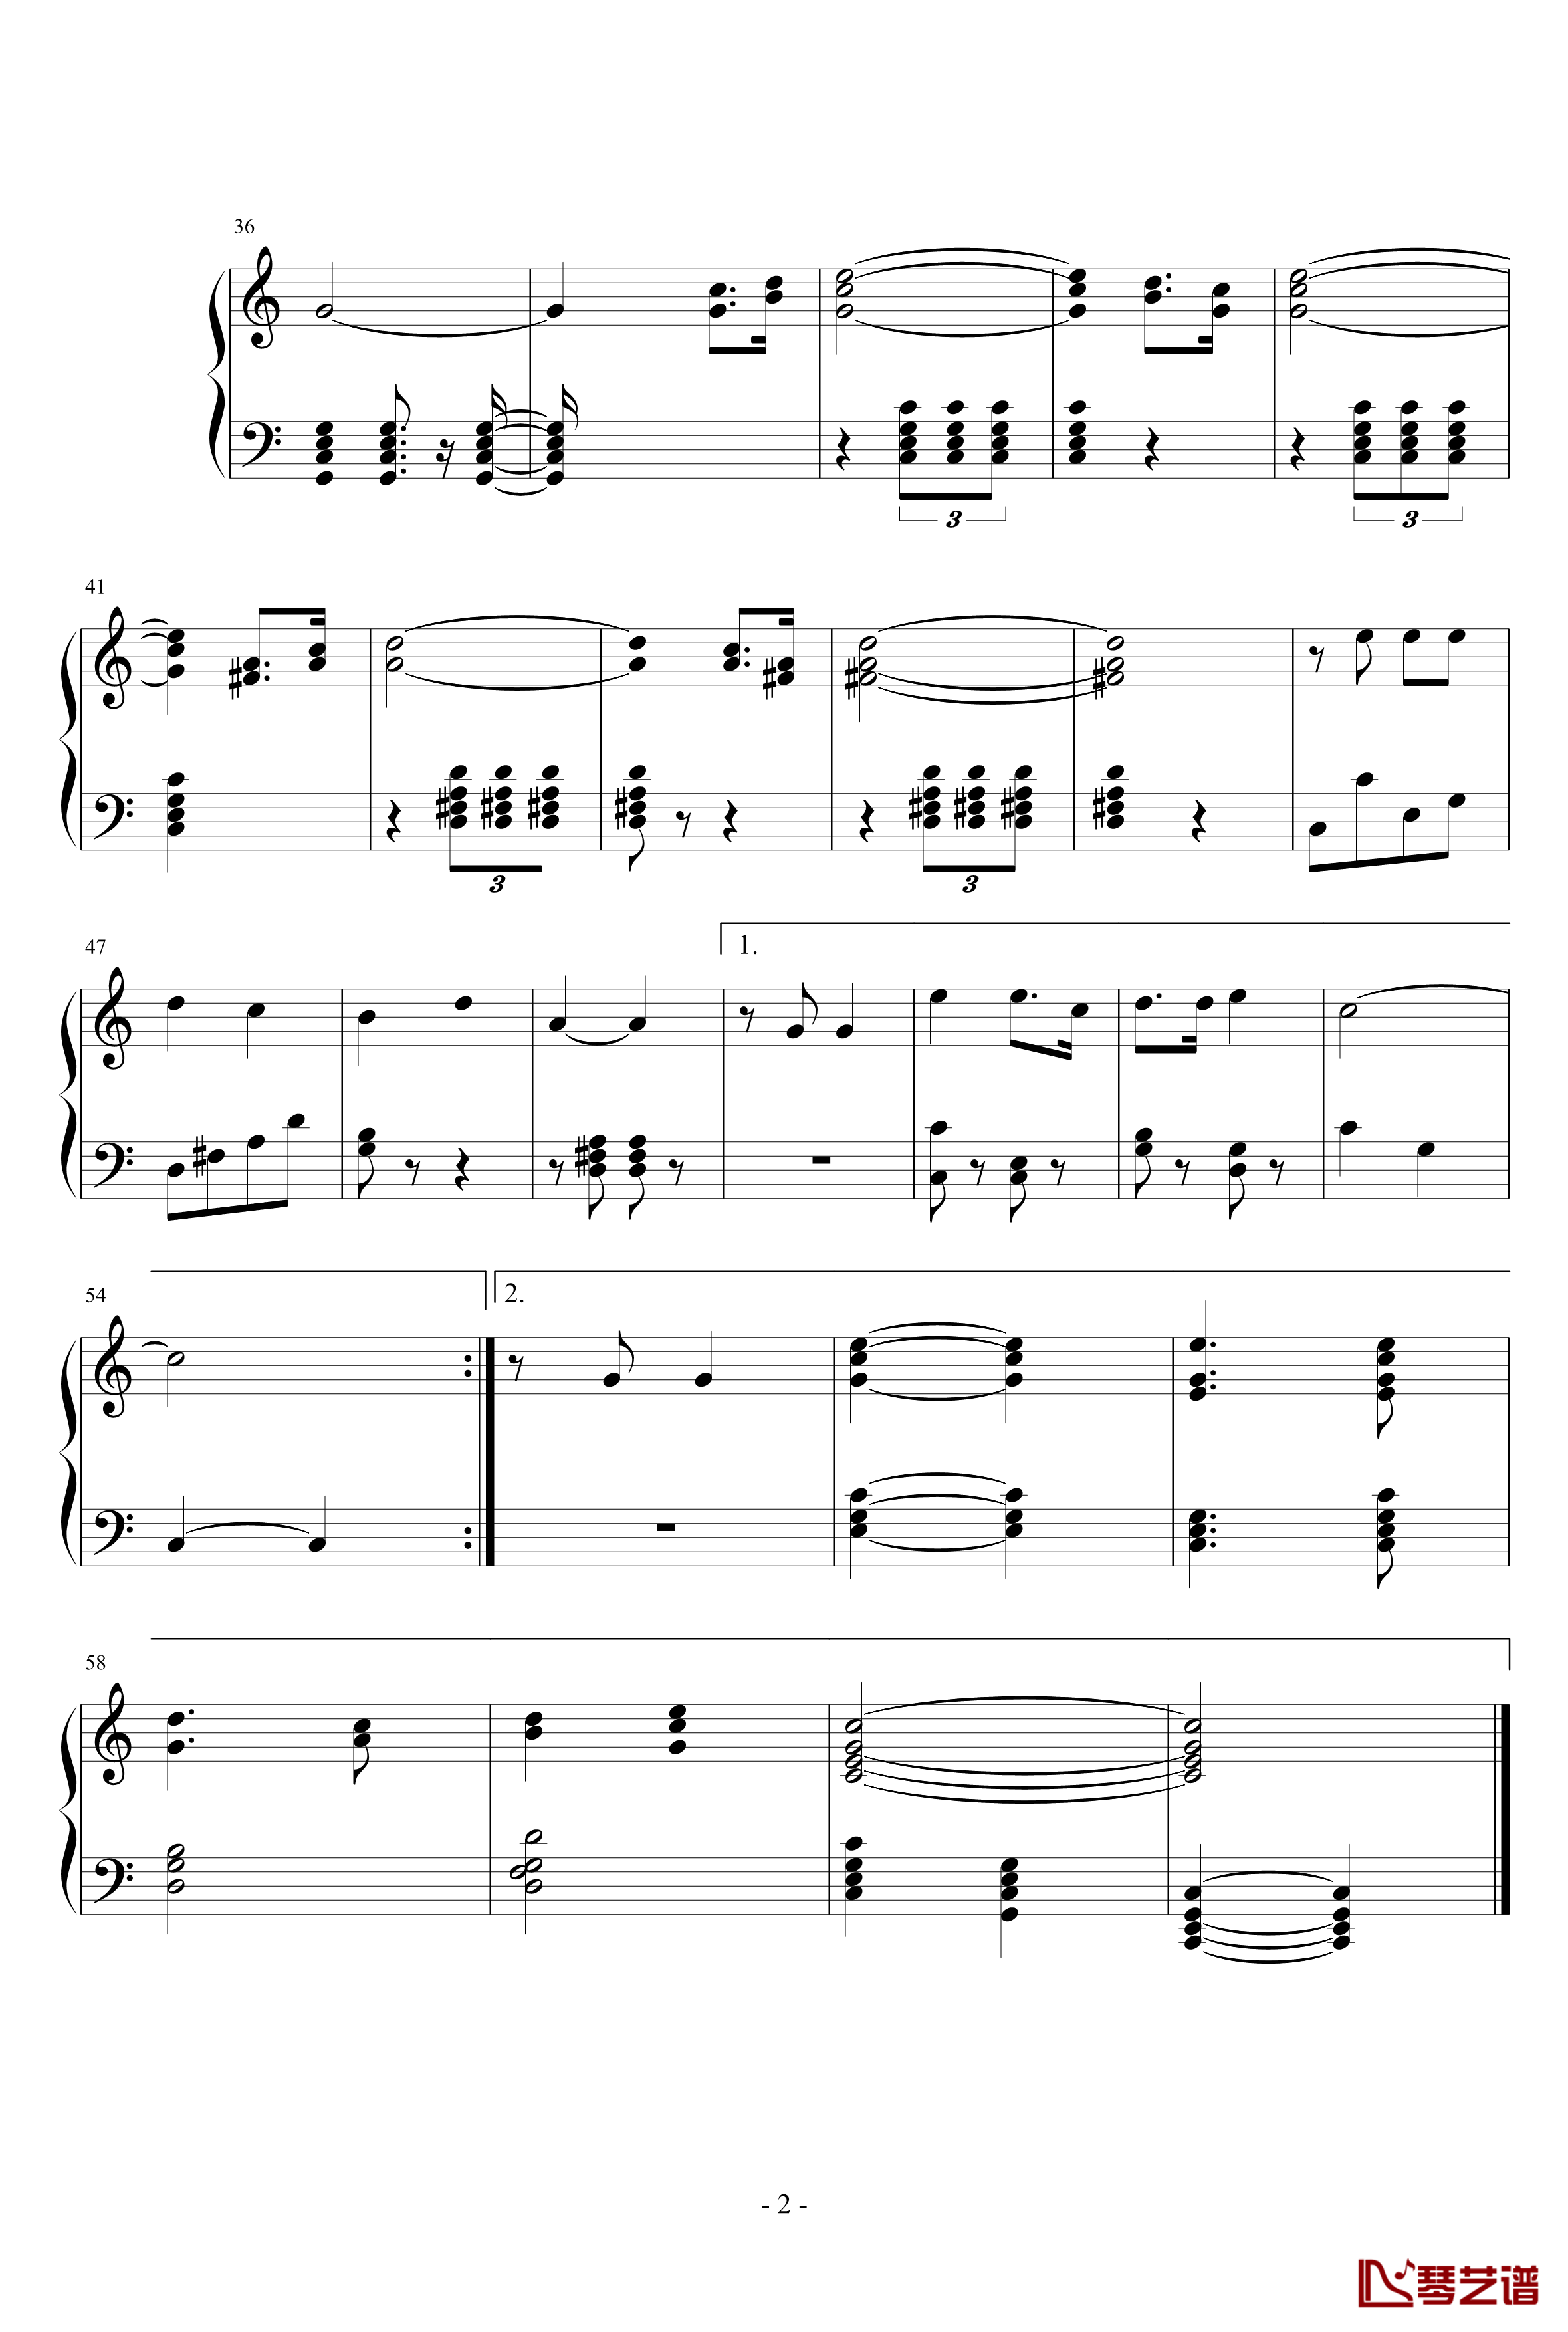 新星升起的地方钢琴谱-齐齐哈尔市实验中学校歌-校歌2